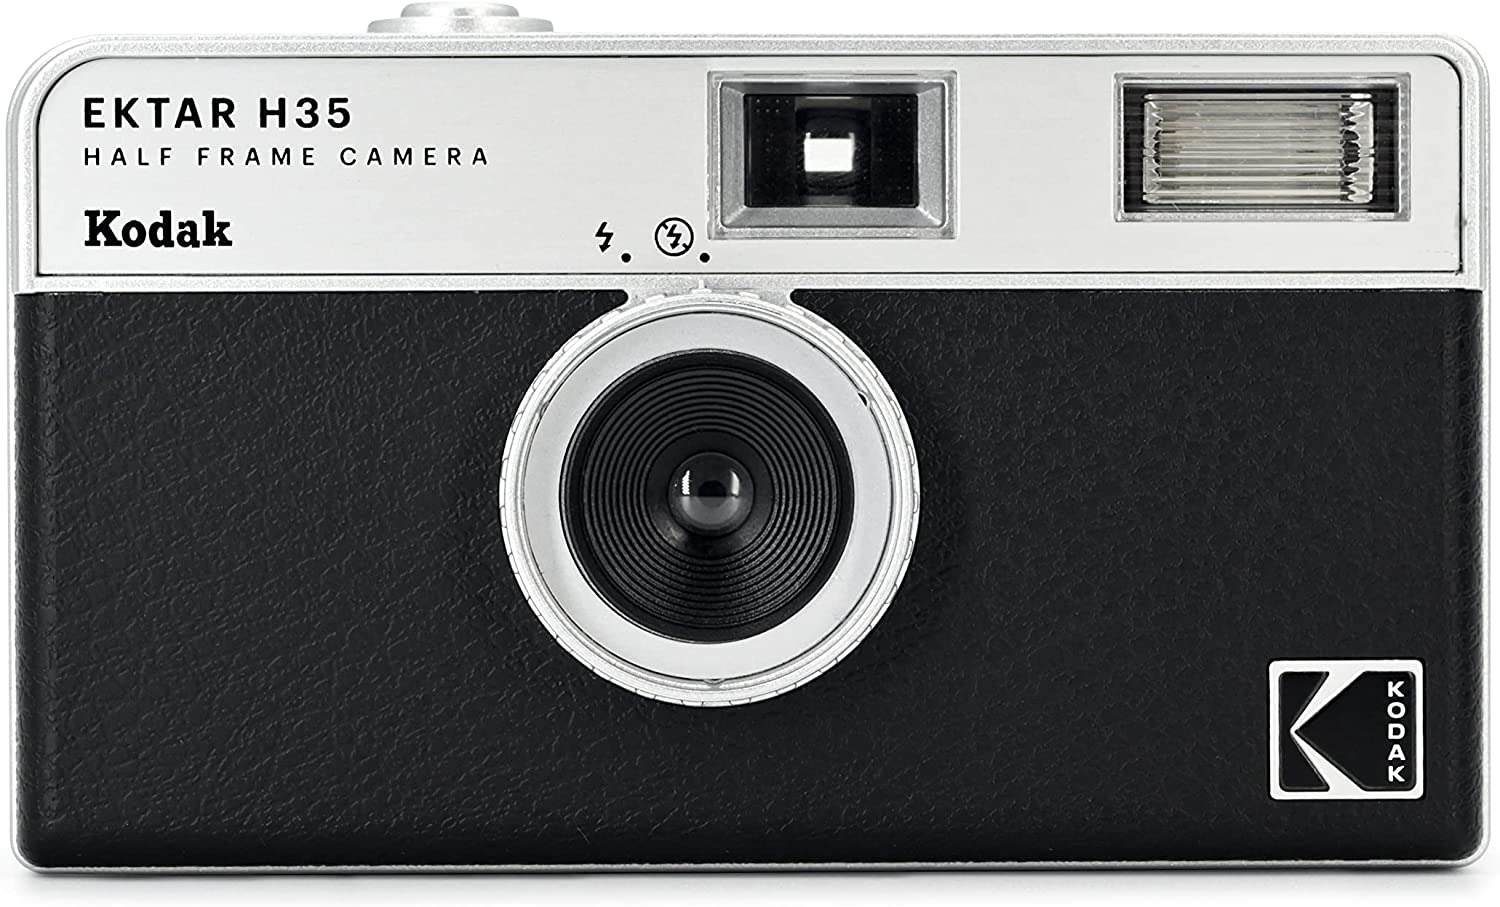 フィルムカメラ Kodak コダック ハーフカメラ フィルムカメラ フィルム枚数の倍撮れる レトロ 簡単 軽量 おすすめ コンパクト オススメ 初心者 35mm カメラ EKTAR H35 ブラック